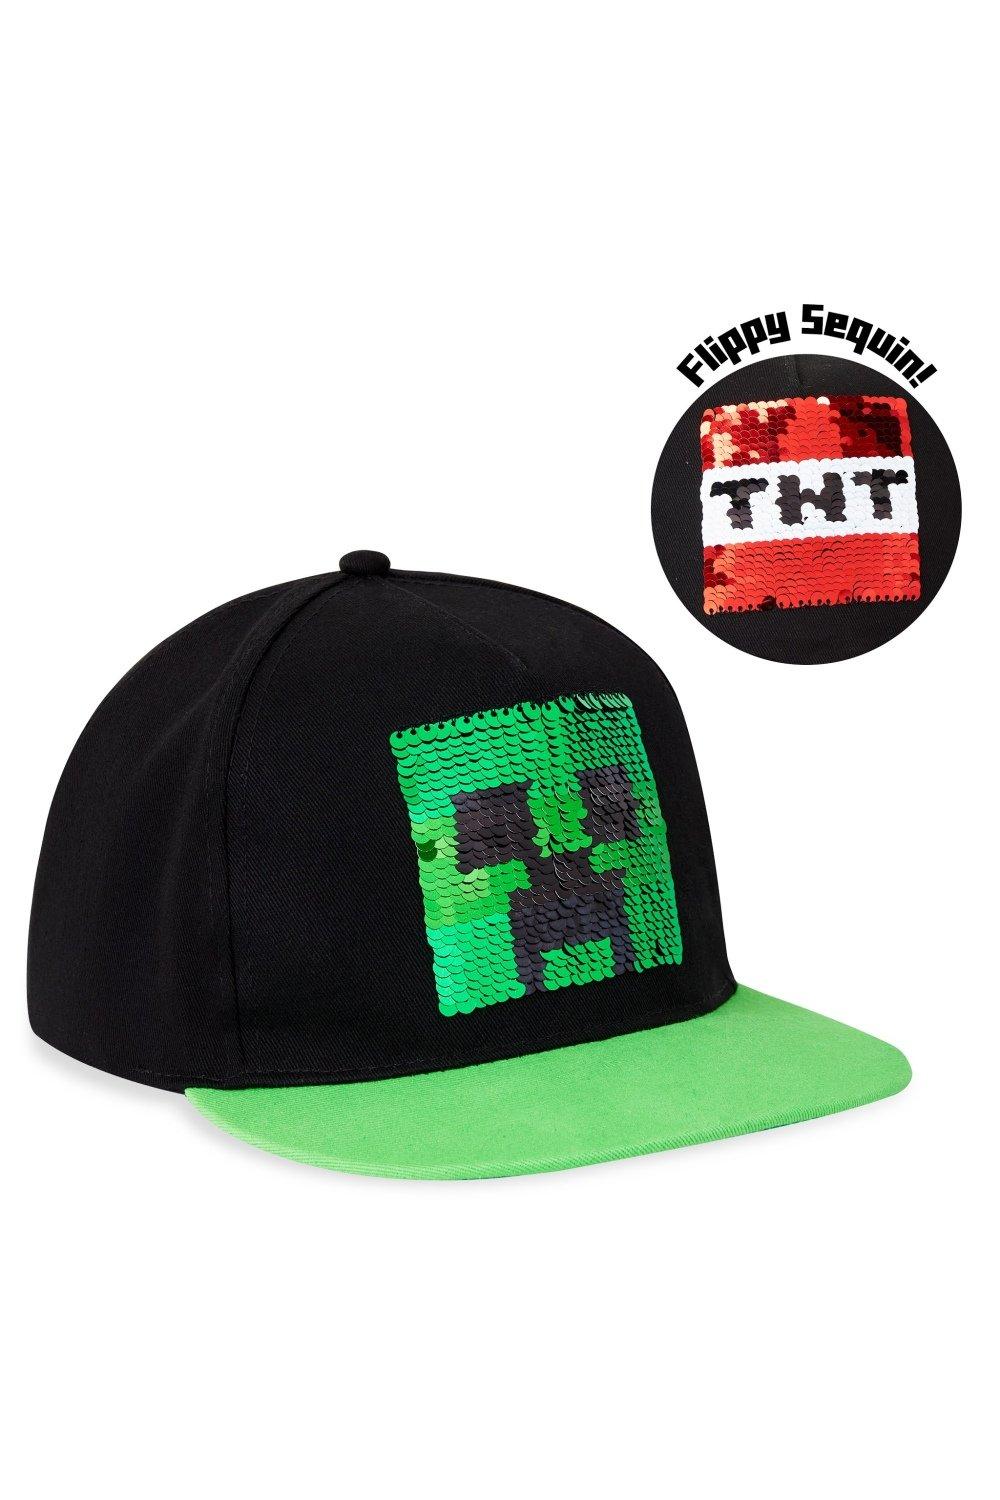 Двусторонняя кепка с пайетками, зеленая Minecraft, мультиколор шапка roblox черная бейсболка с порошком женская бейсболка студенческая корейская версия солнцезащитной шляпы мужская и женская бейсболка